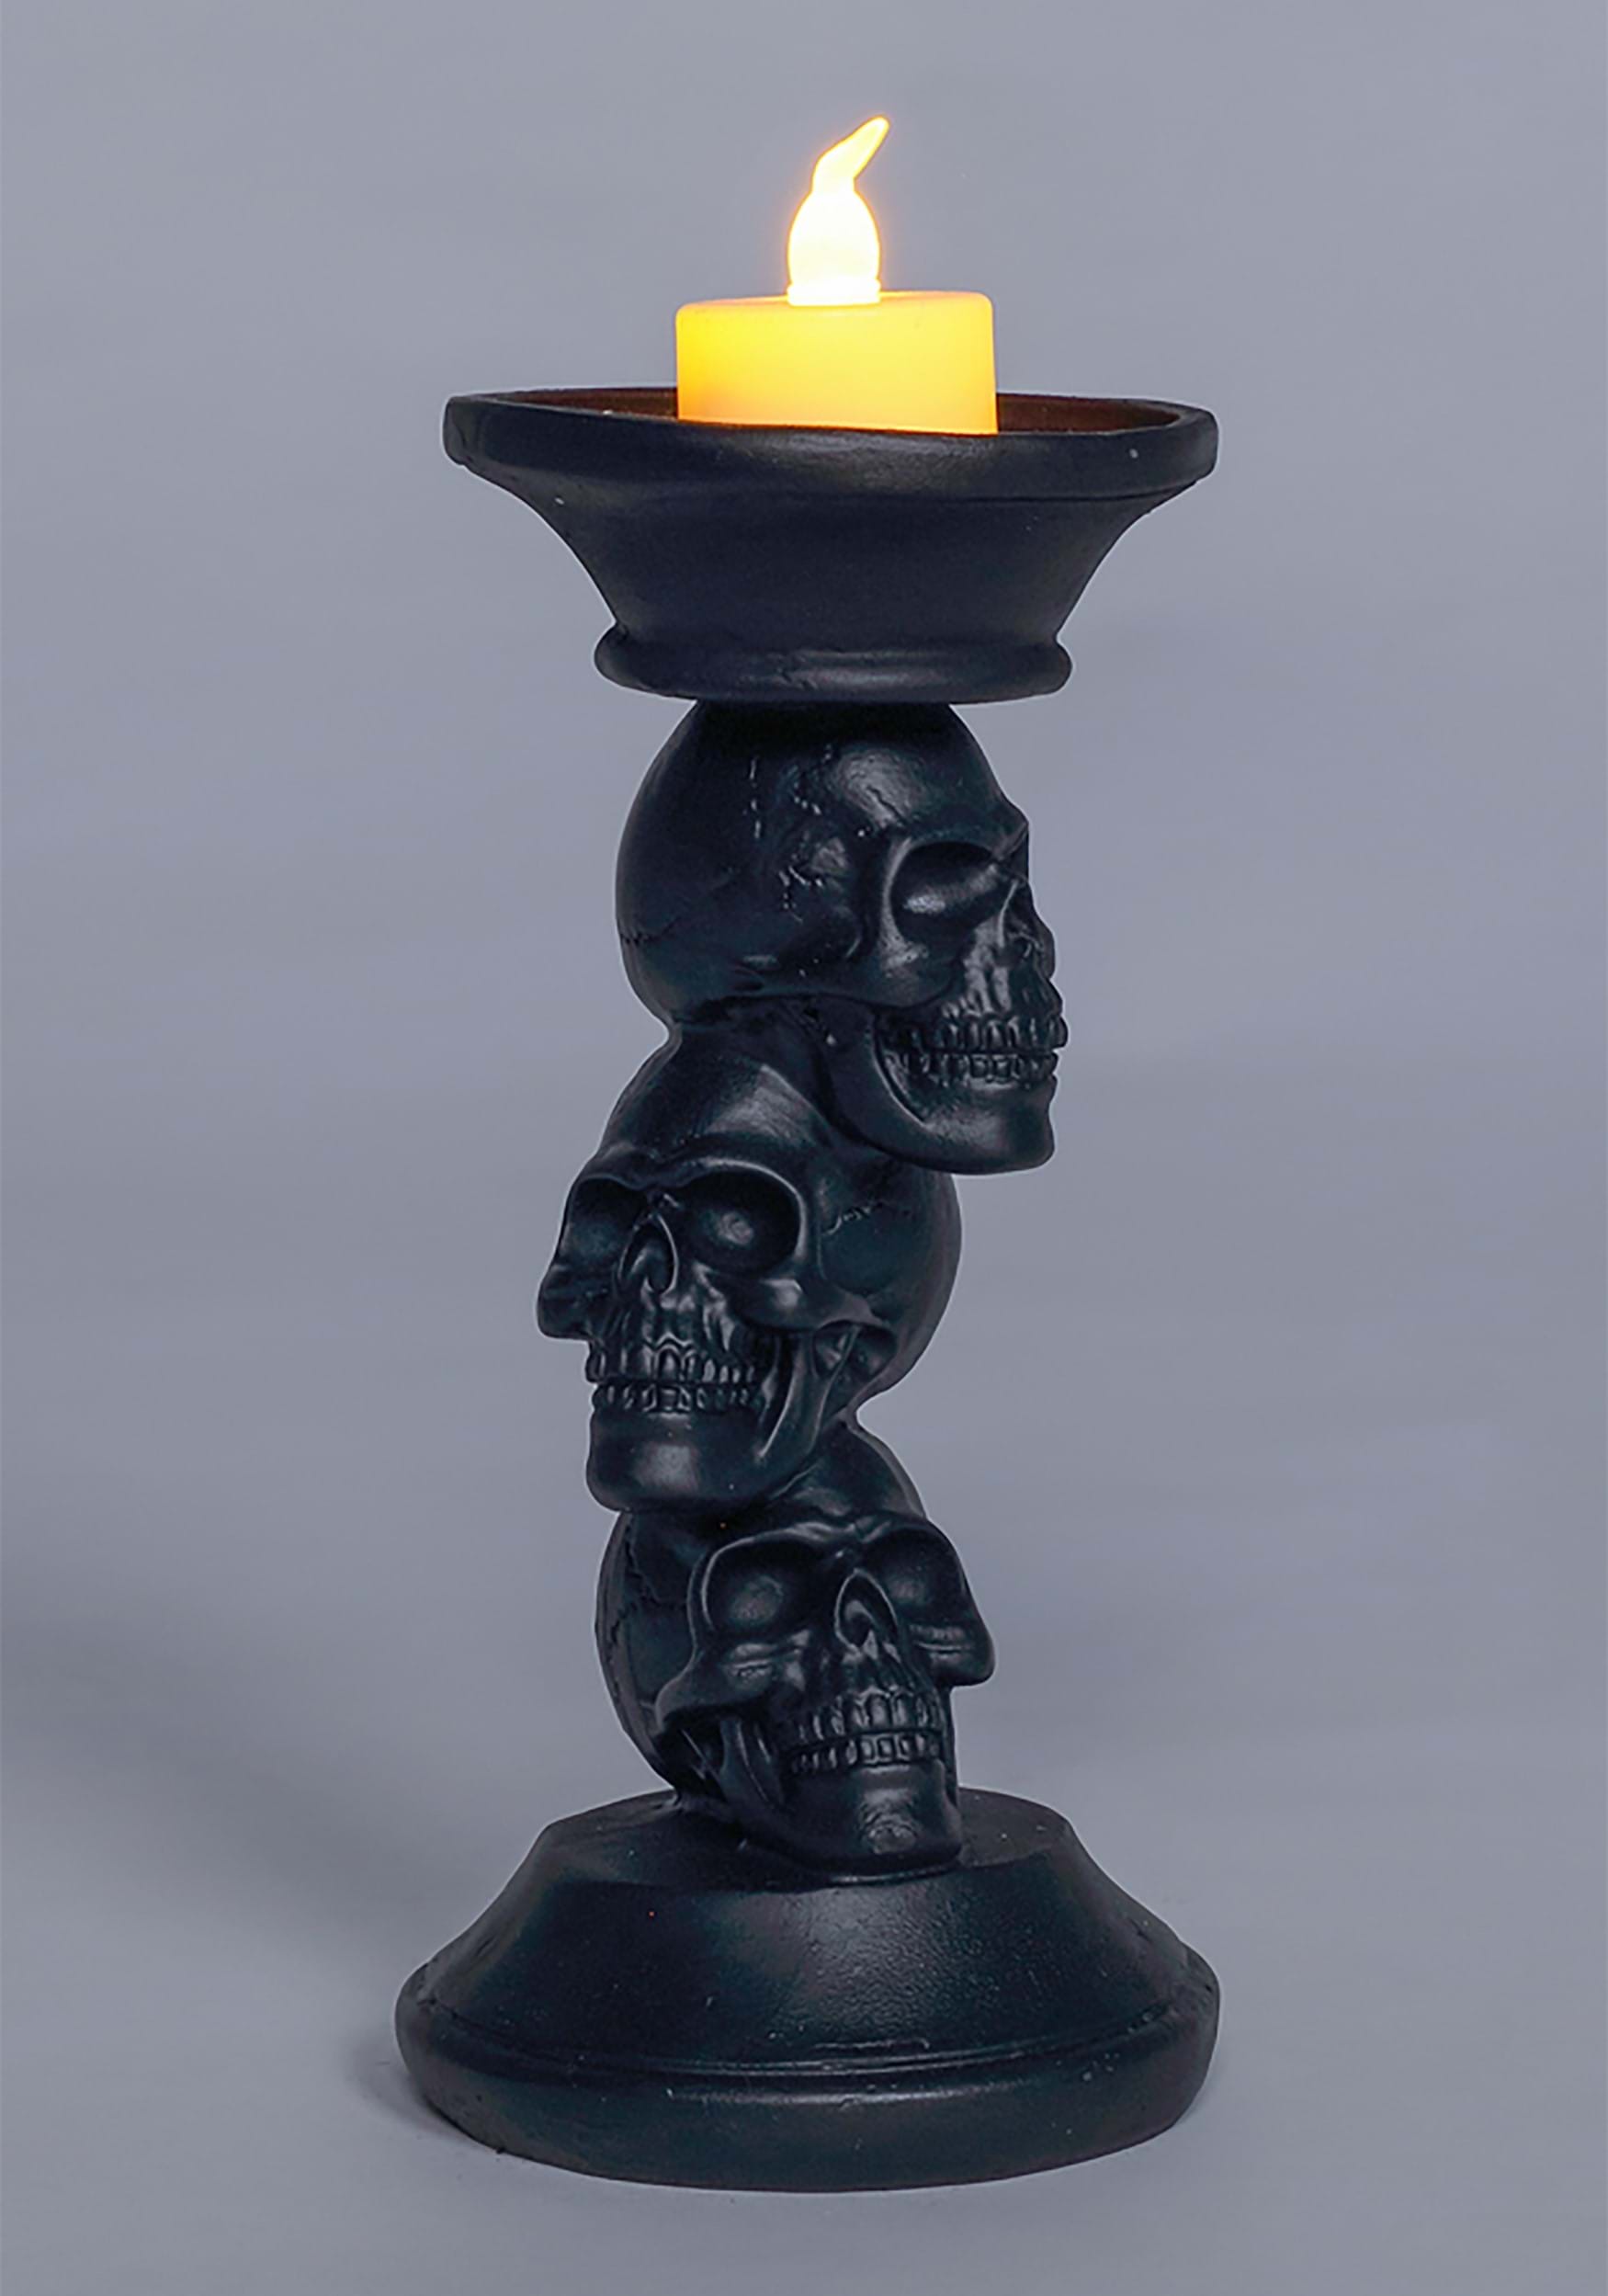 7″ Resin Black Skull Candle Holder Prop